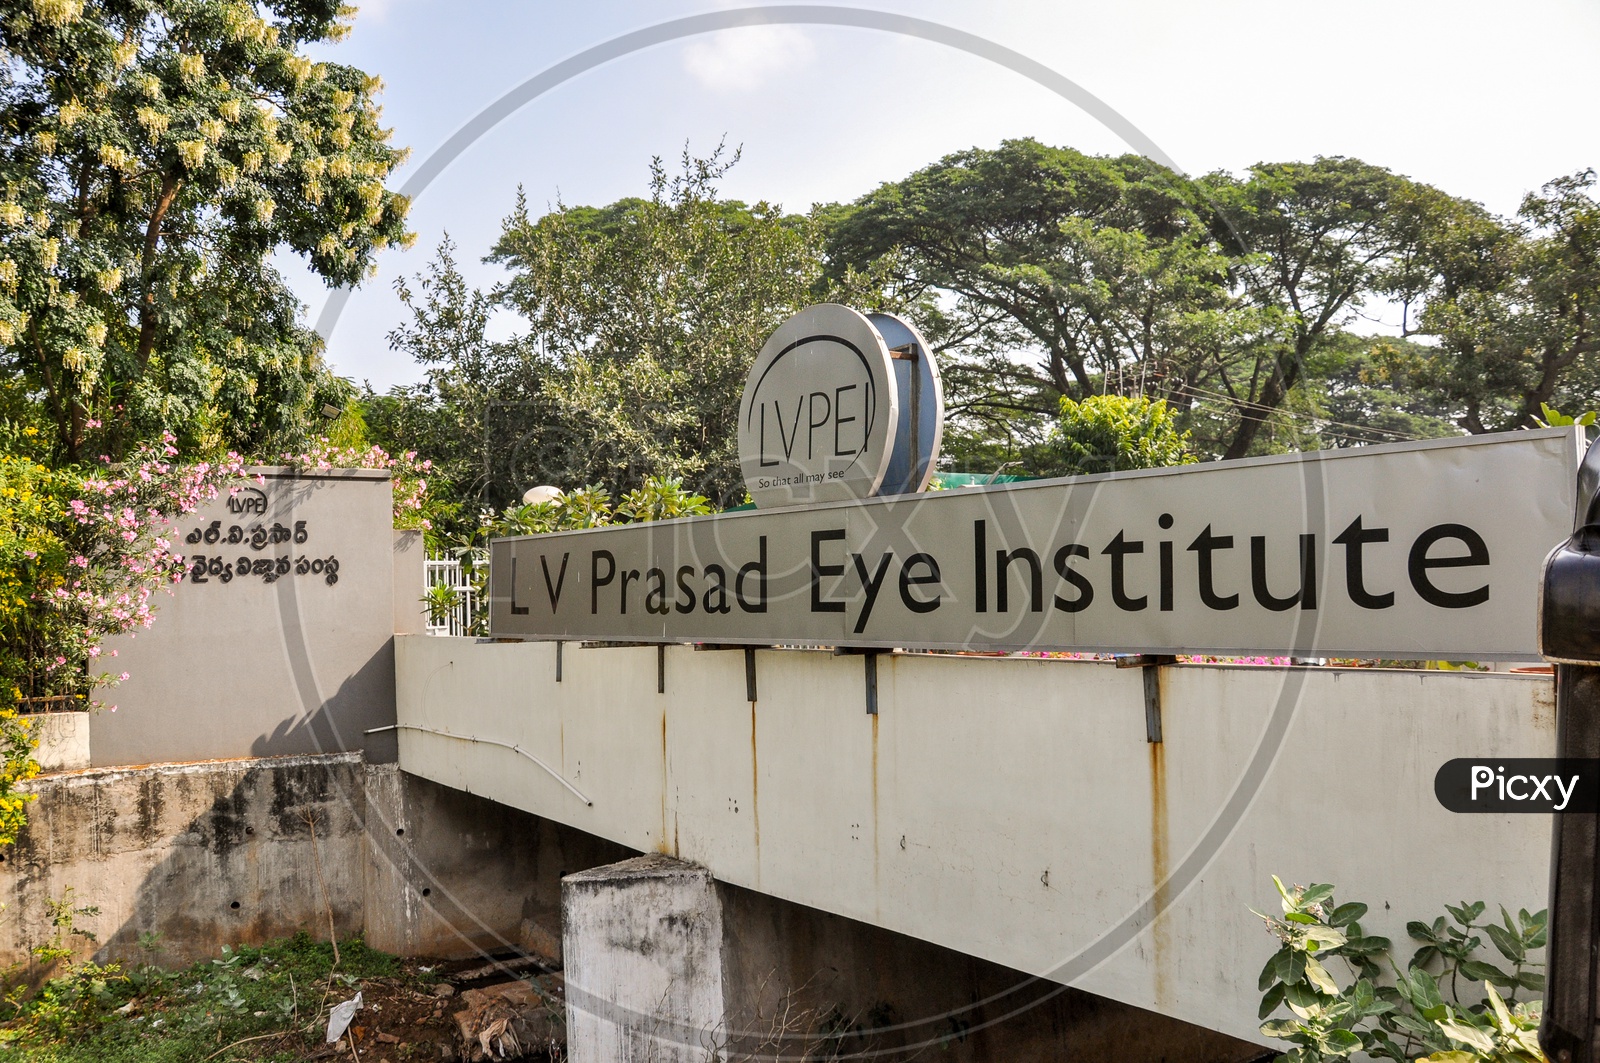 LV prasad eye institute